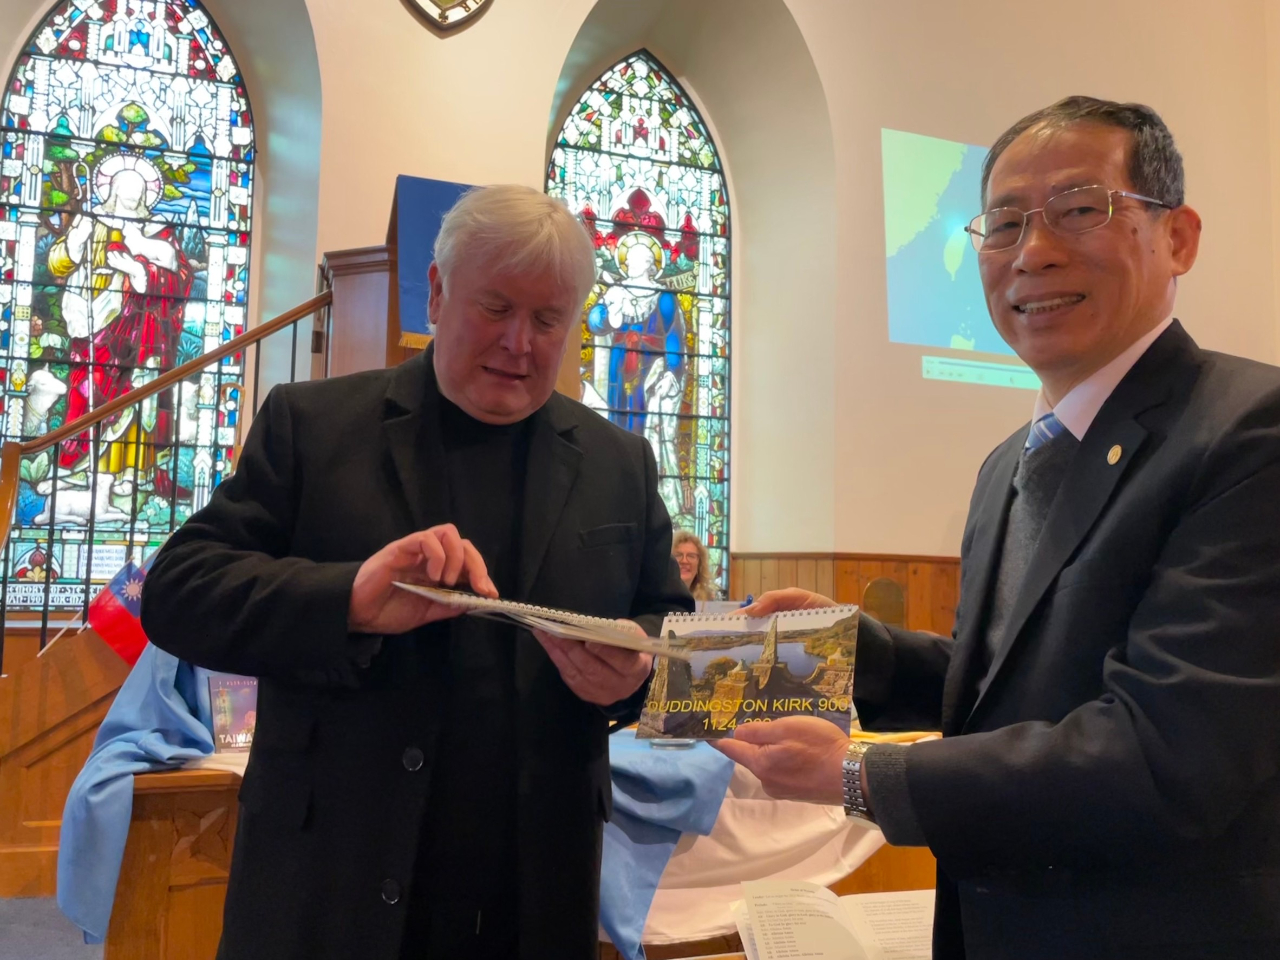 張處長嘉政偕同仁出席蘇格蘭教會所屬Duddingston教堂於本年3月3日舉行之「基督教團體世界公禱會為臺灣祈禱」(WORLD DAY OF PRAYER FOR TAIWAN)活動